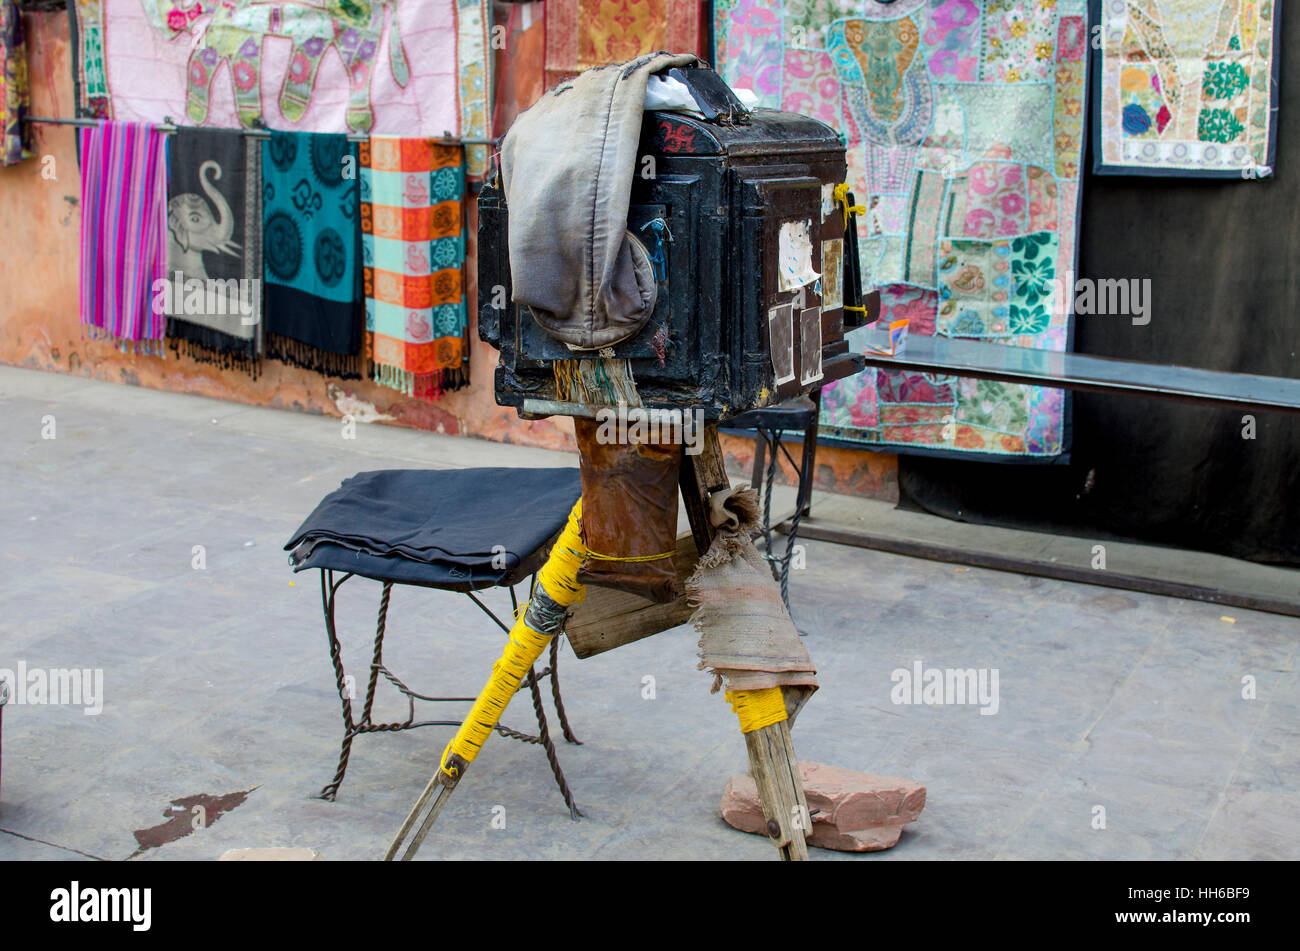 die alten Beine Kosten in Indien, Indien zu fotografieren, Geschichte, Maschinenbau, Erinnerungsfoto, alt, stehend, die Kamera Kamera Stockfoto